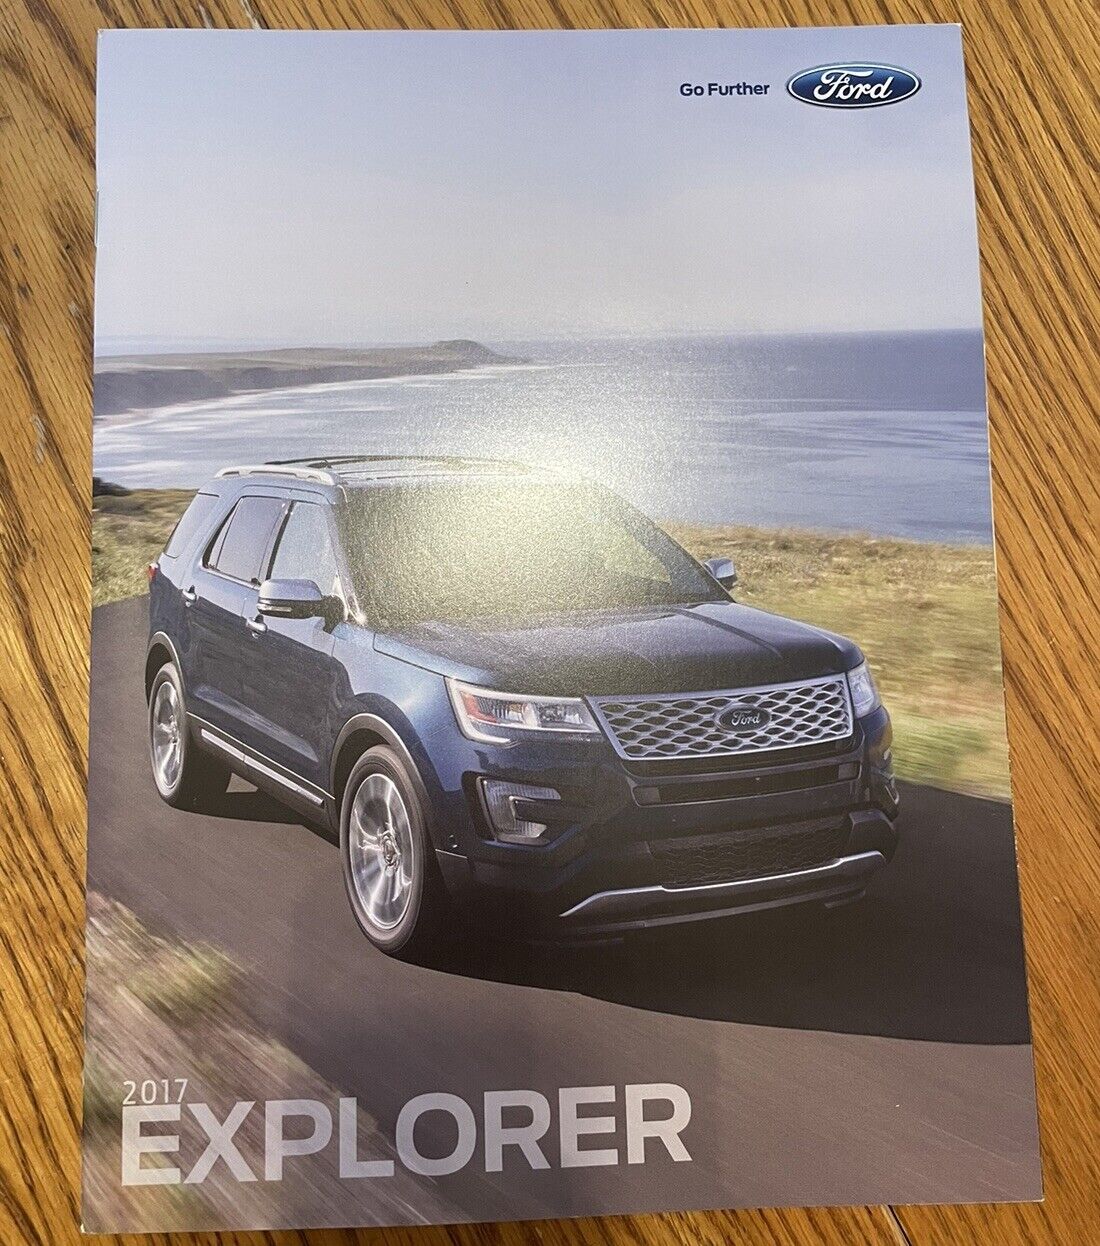 2017 Ford Explorer Brochure - 2017 Ford Brochures - Ford Brochures